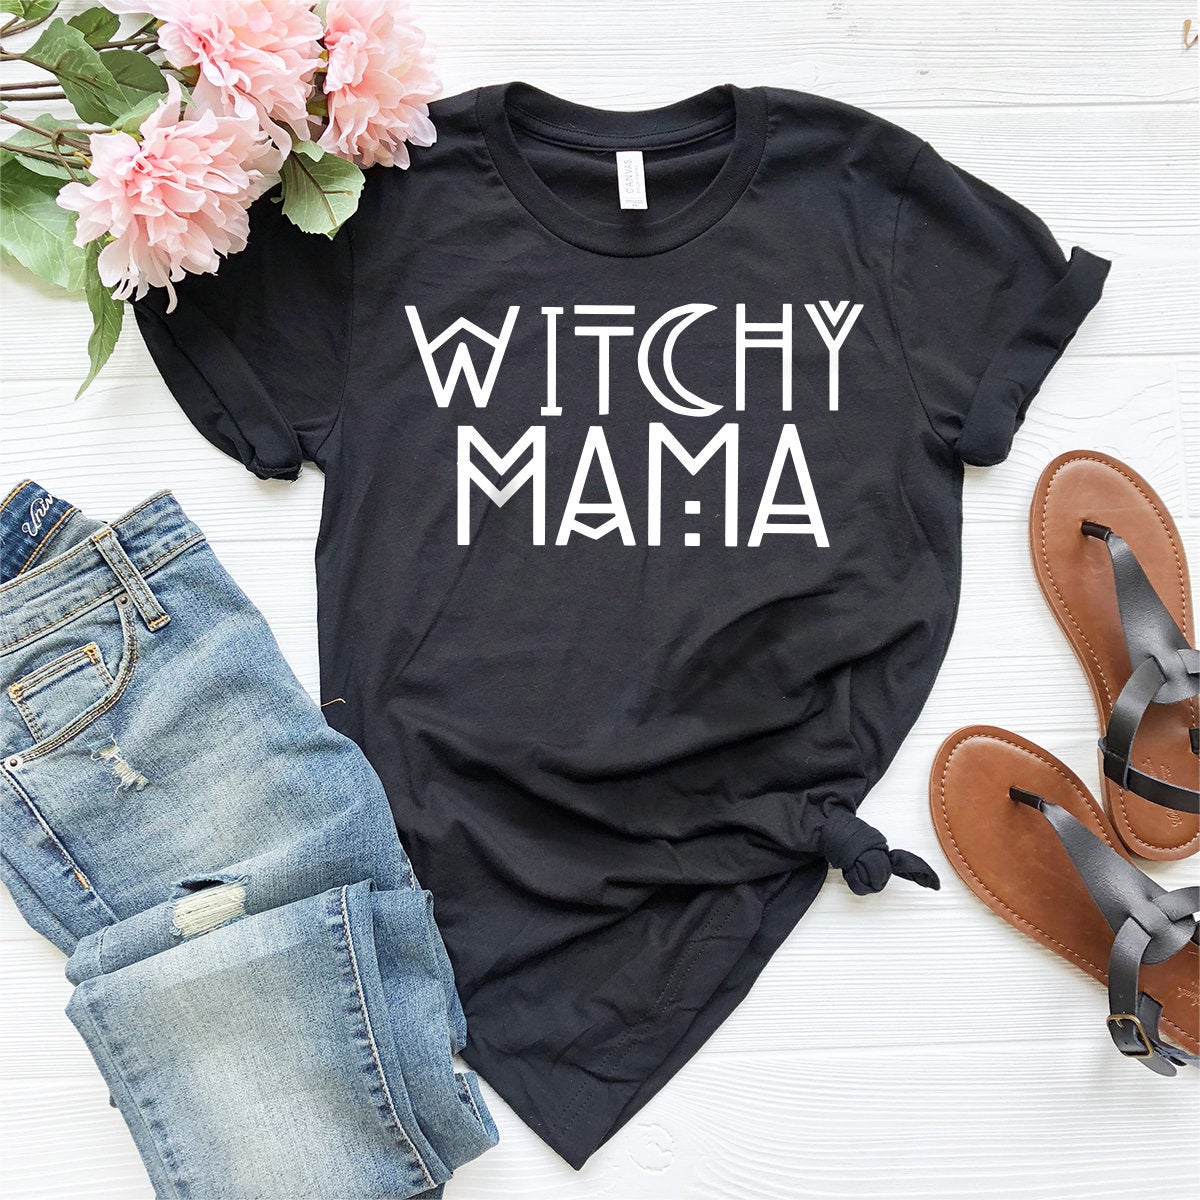 Hocu Pocu T-Shirt, Witchy Mama Shirt, Mom Halloween Shirt, Fall Shirt, Hocus Pocus Shirt, Halloween Tee, Women Halloween Shirt, Witch Tee - Fastdeliverytees.com